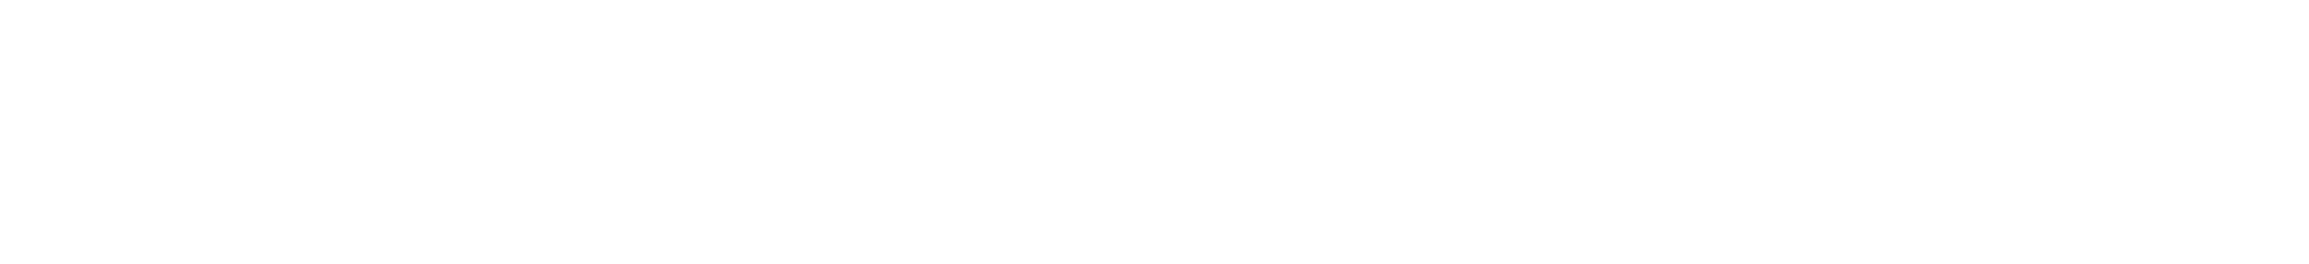 Unternehmer Journal Logo Weiß